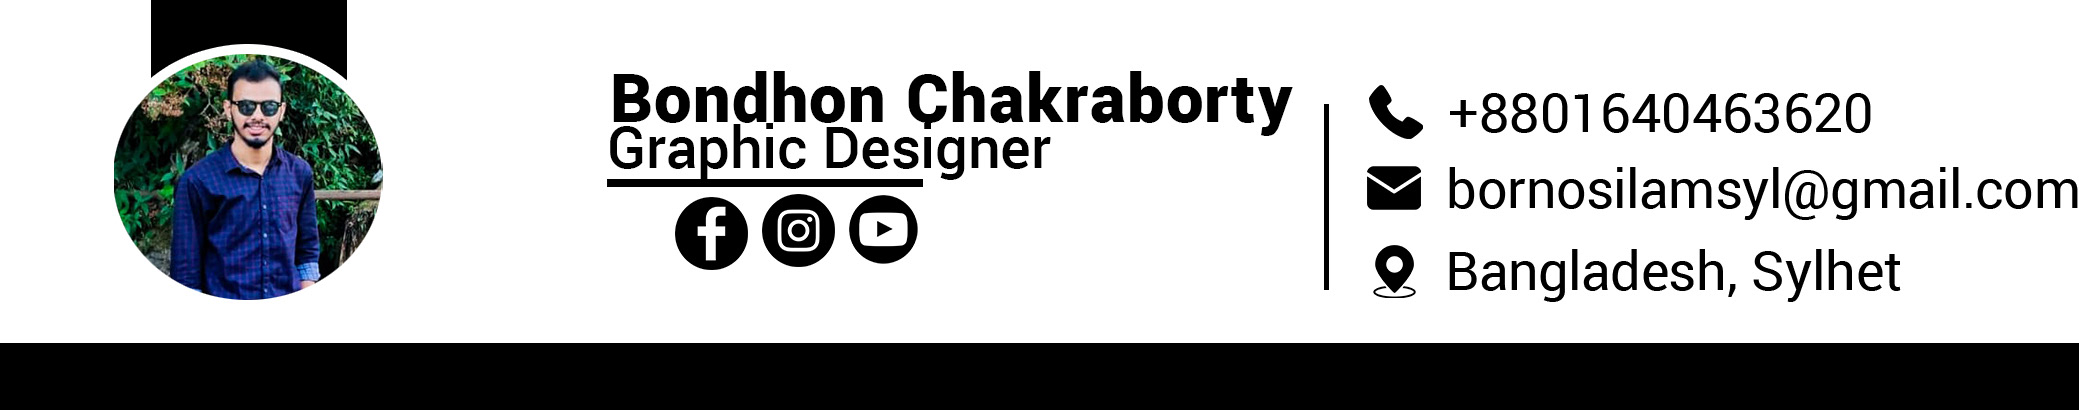 Bondhon Chakraborty's profile banner